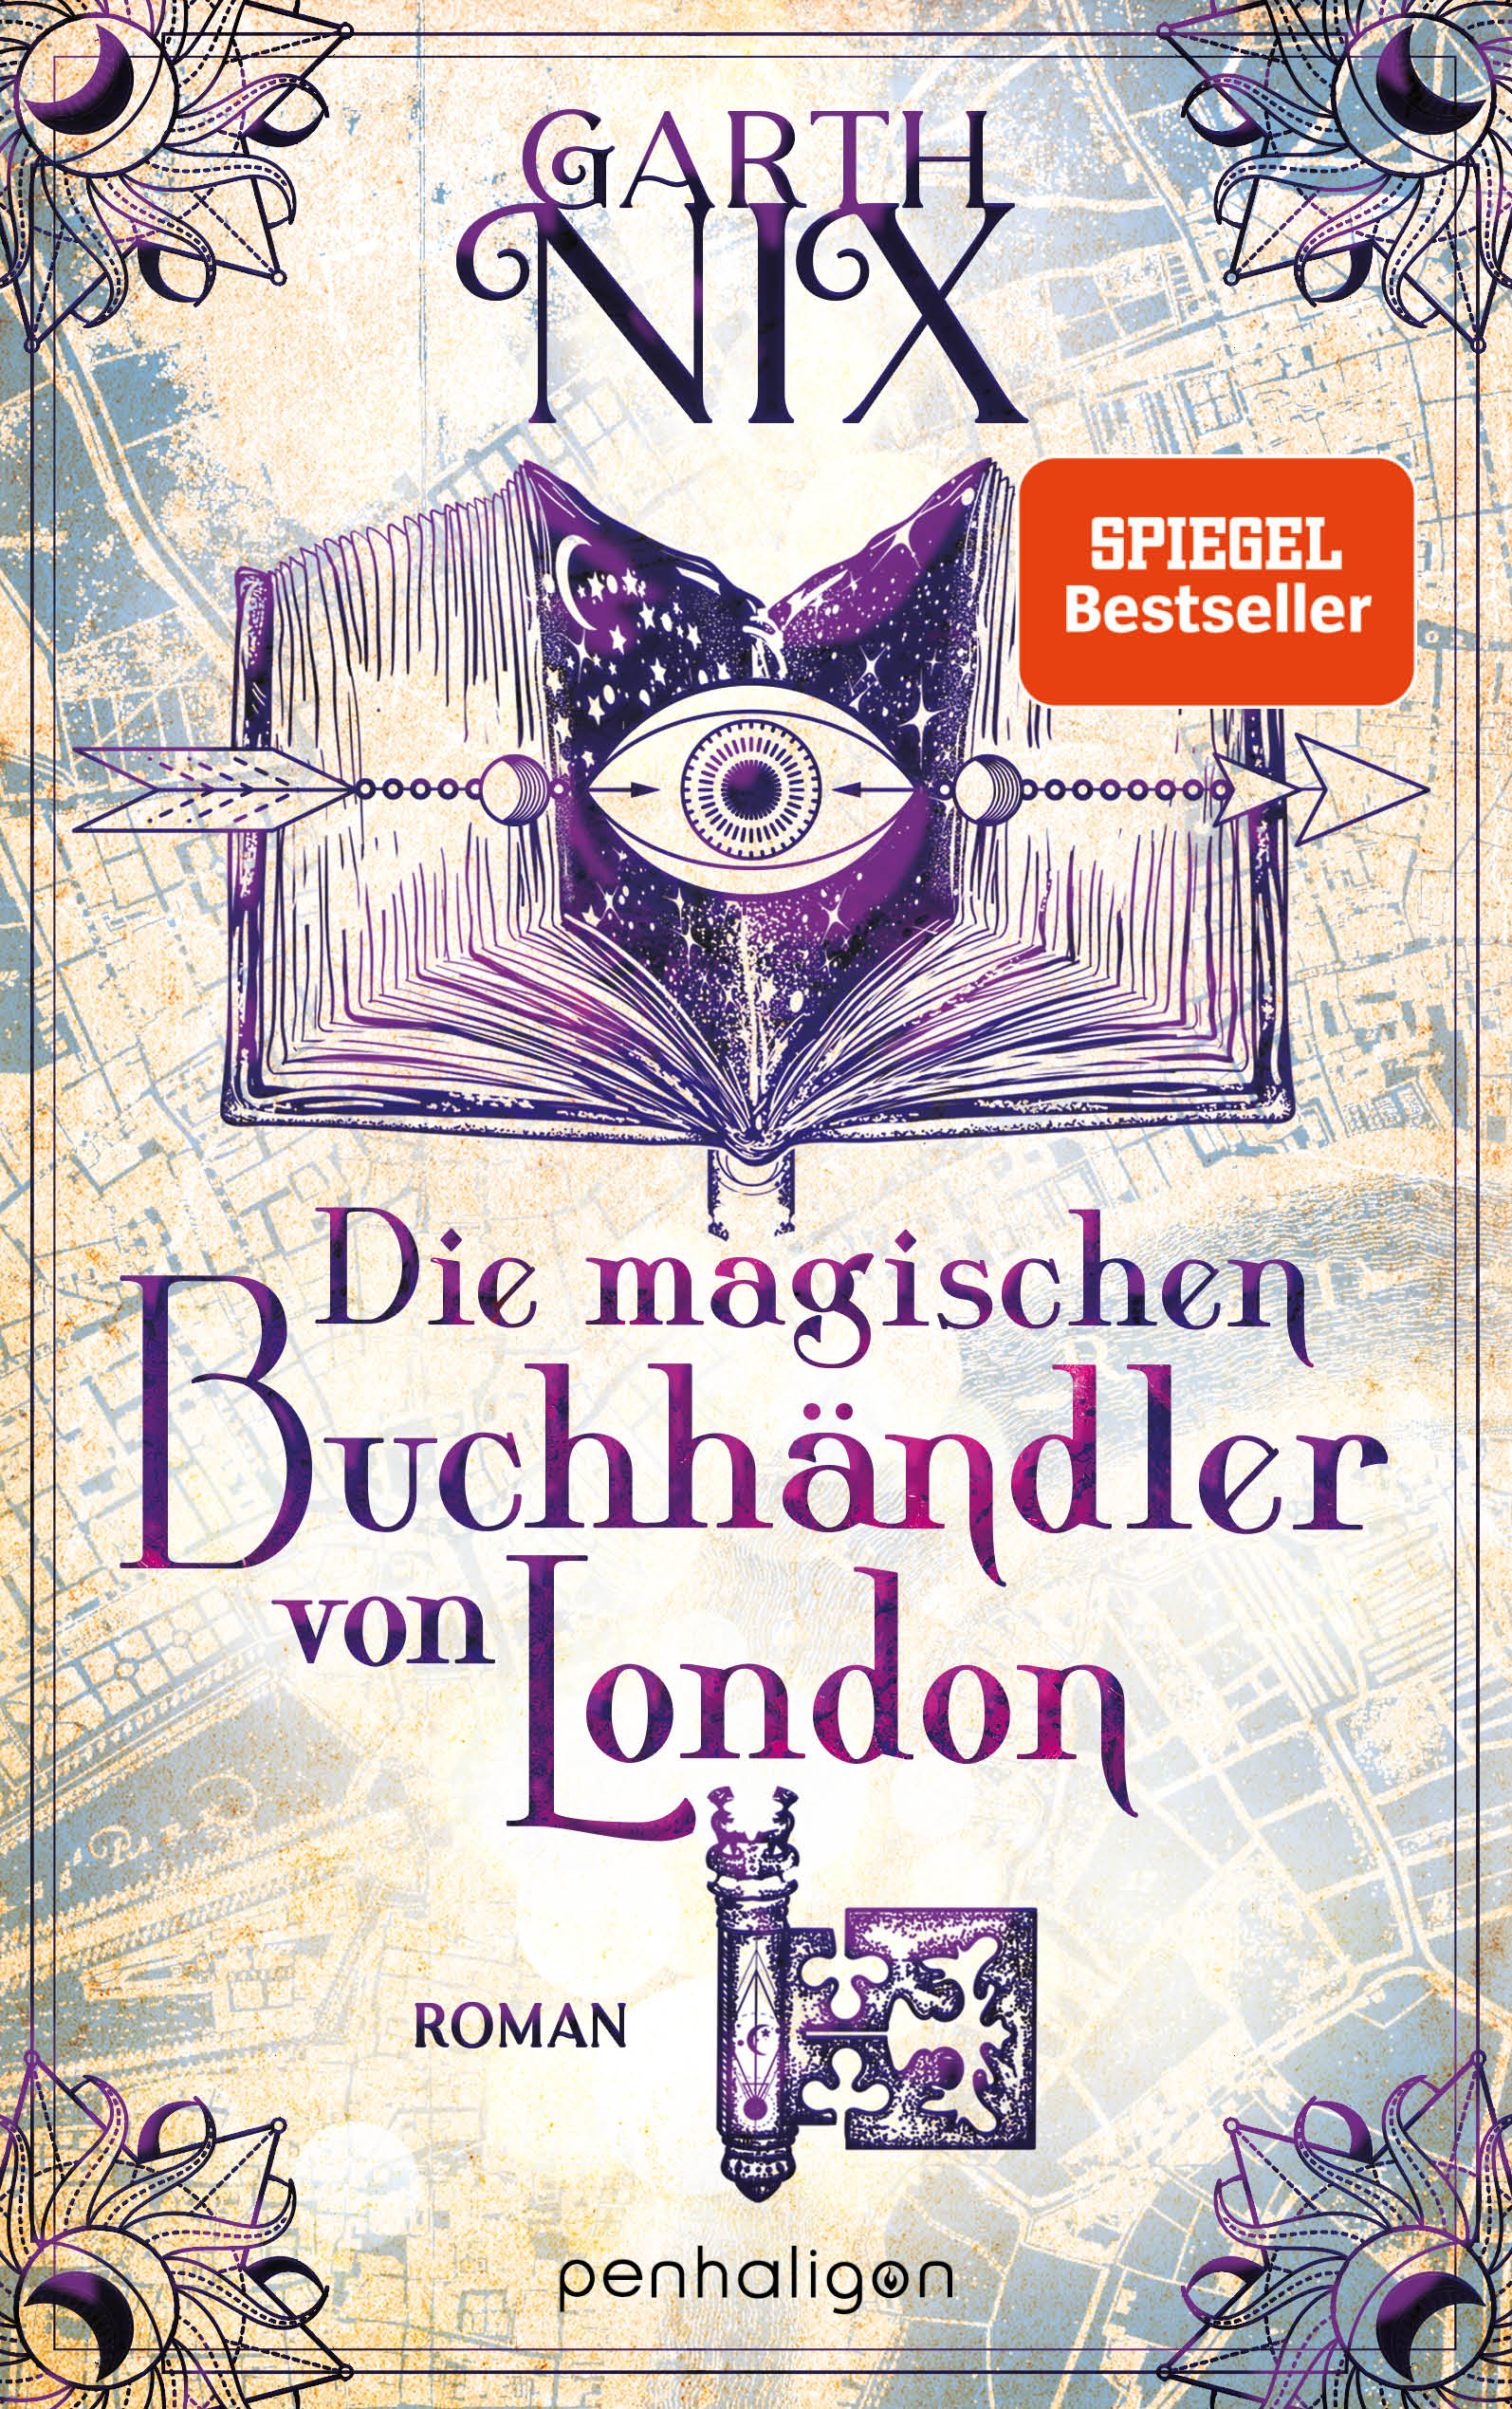 Cover des Buches "Die magischen Buchhändler von London" von Garth Nix